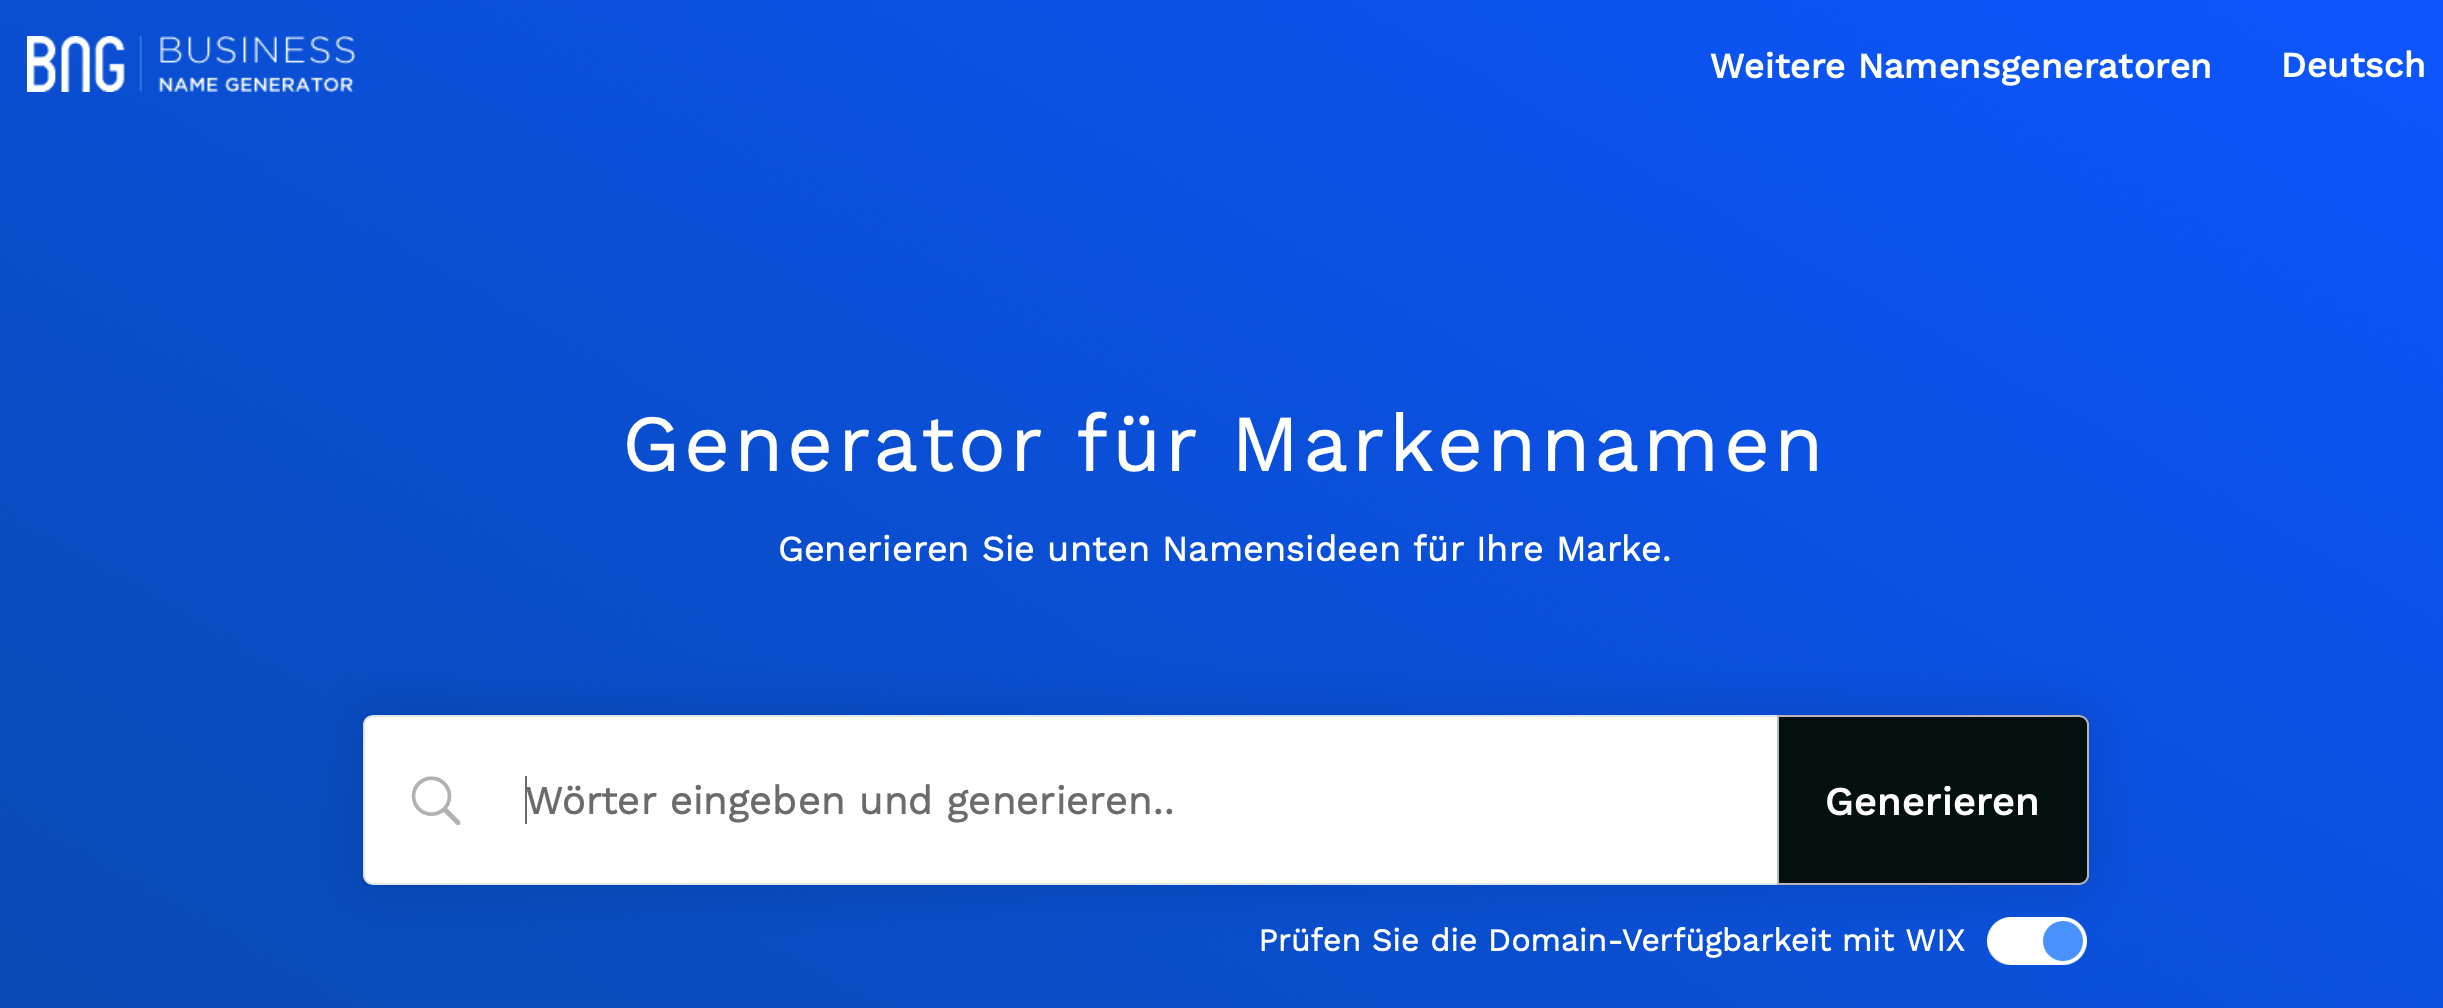 business name generator Startseite, Beispiel markenname generator